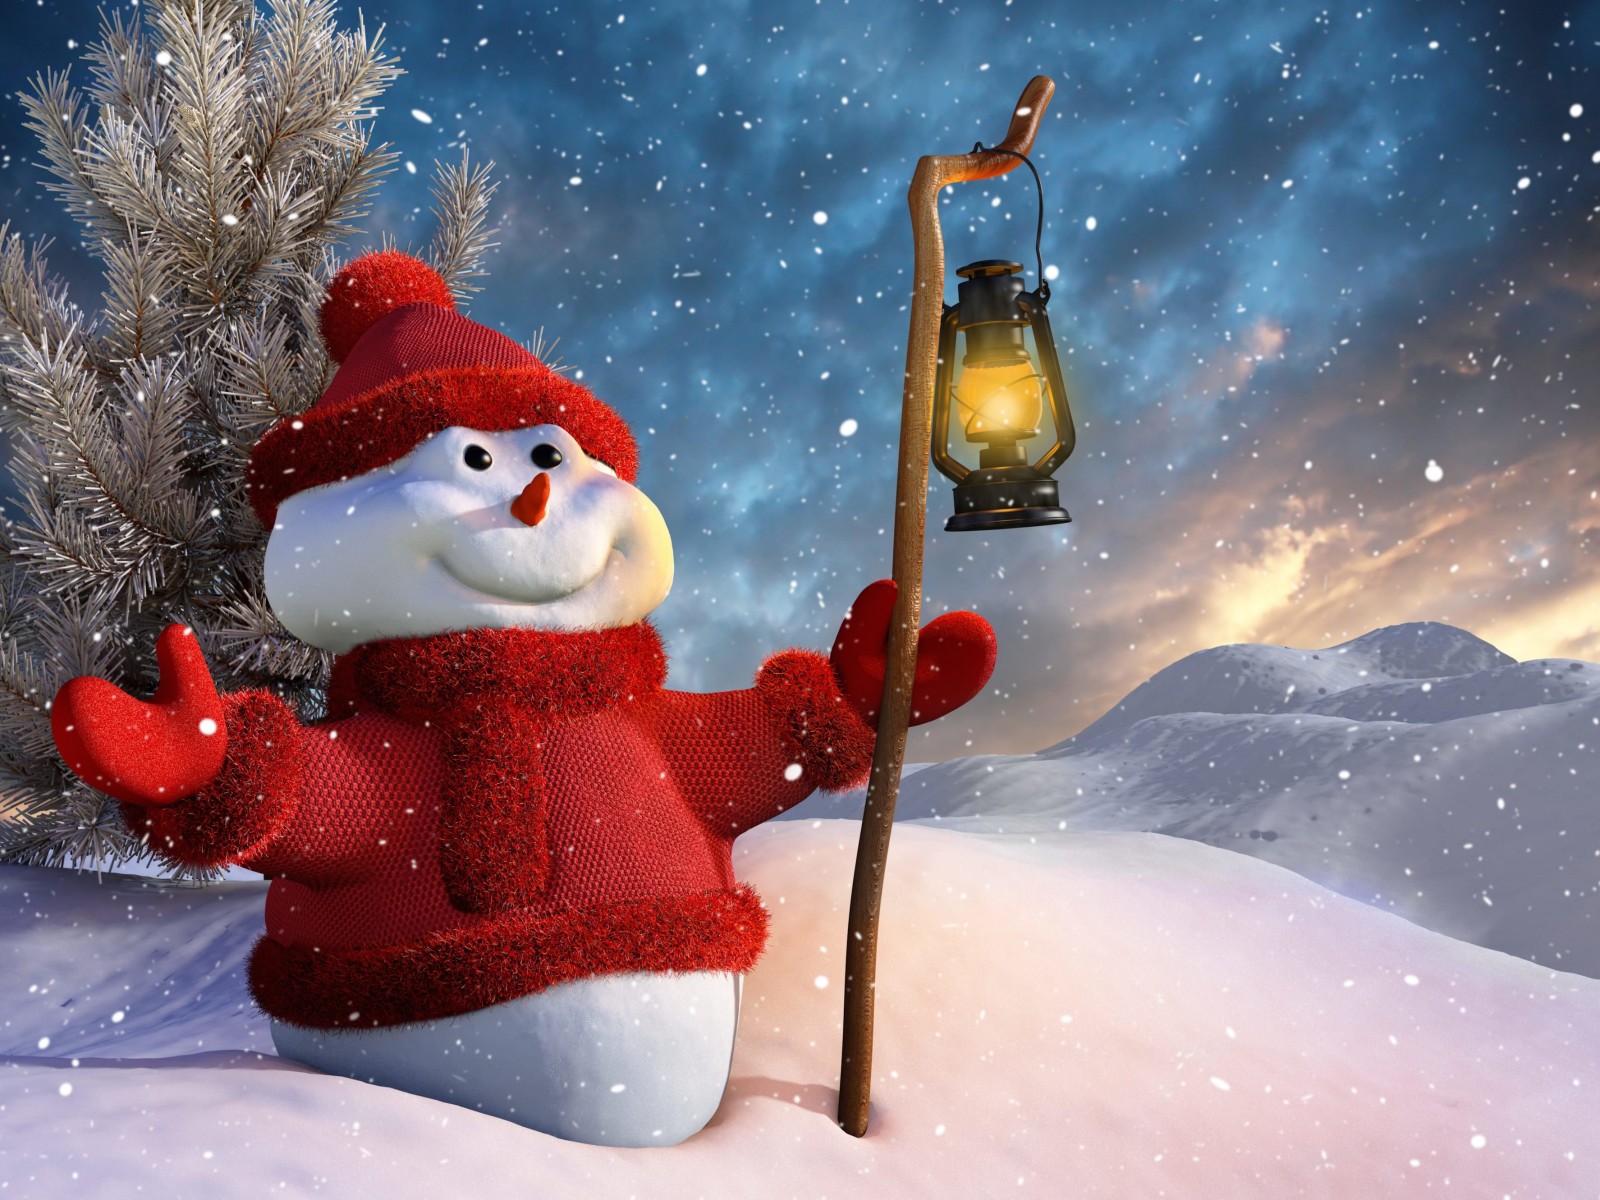 Christmas Snowman Wallpaper for Desktop 1600x1200